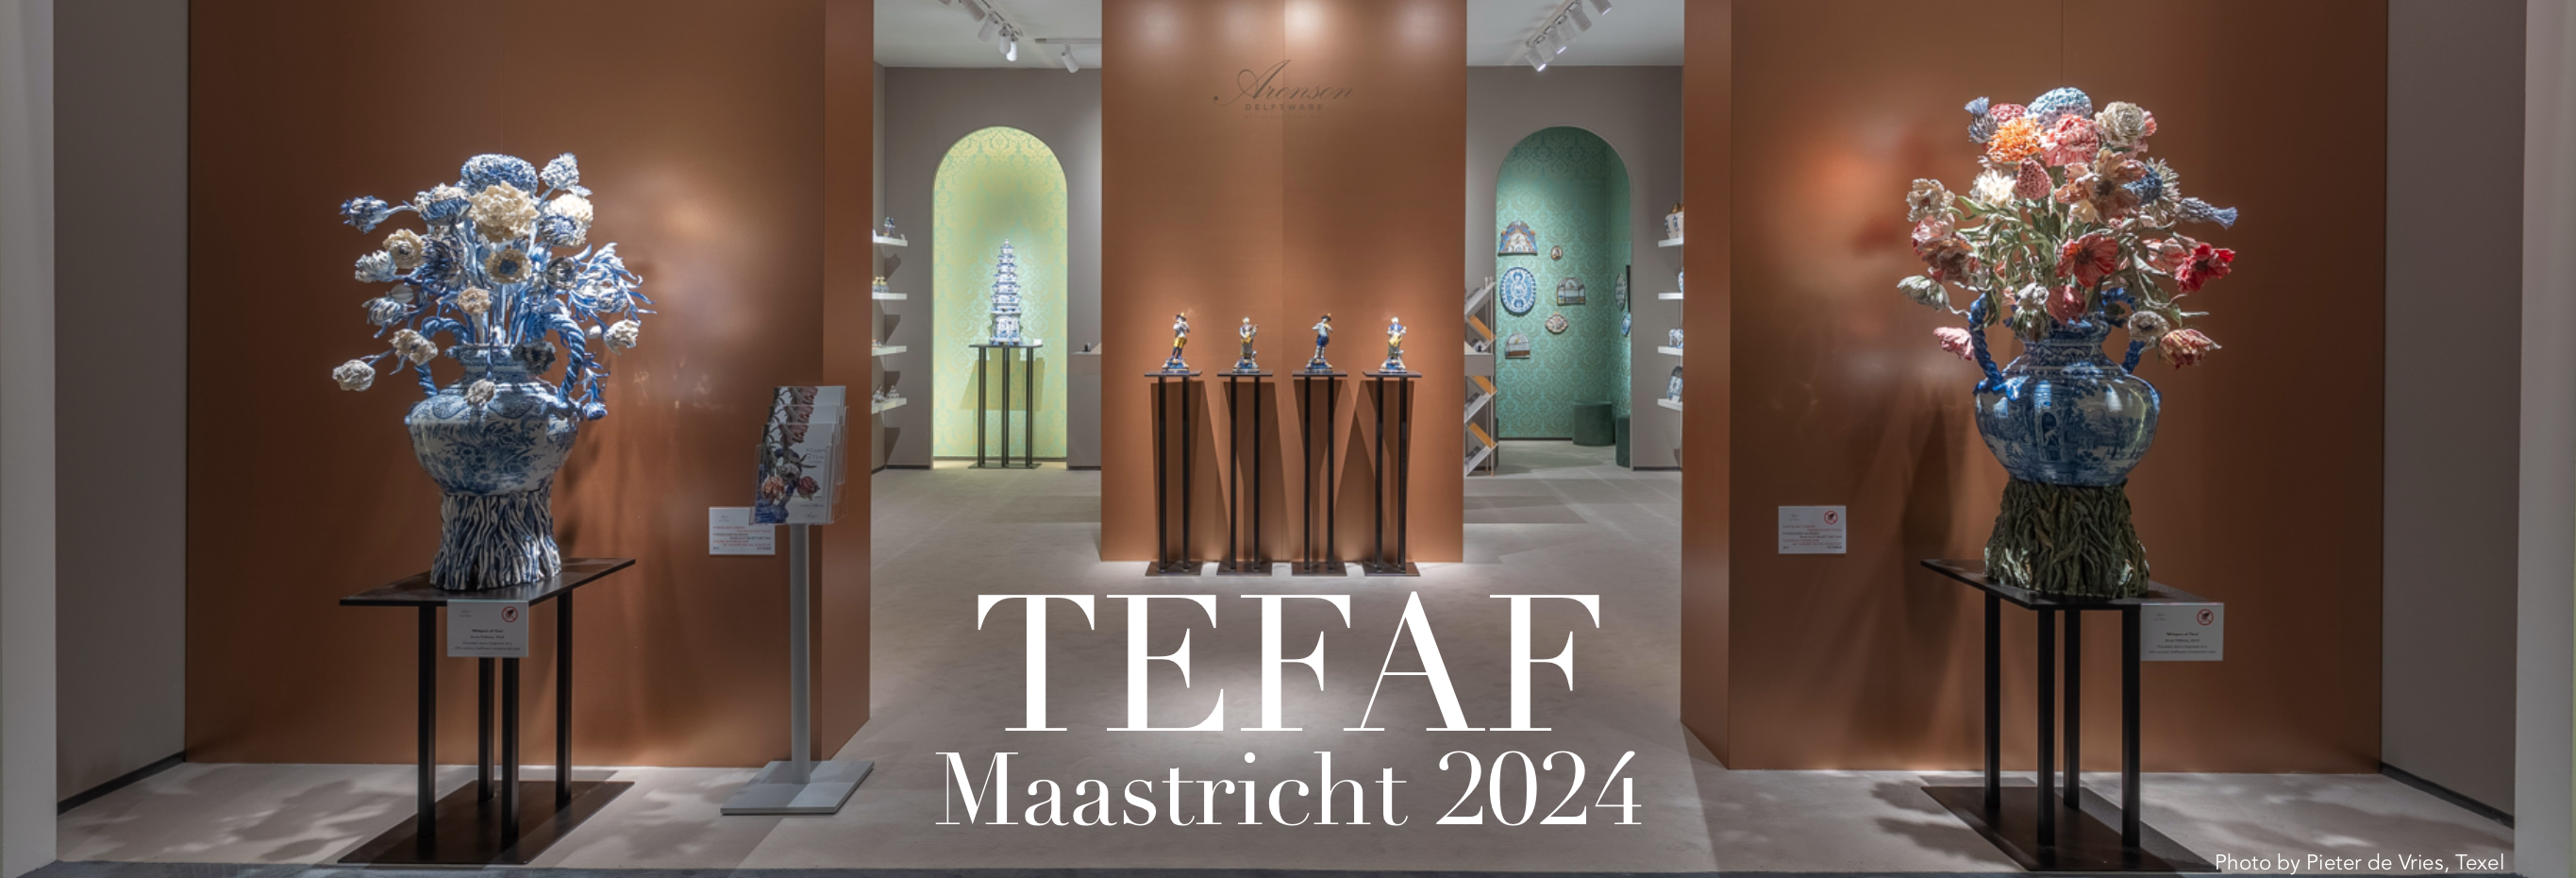 TEFAF Maastricht 2024 banner